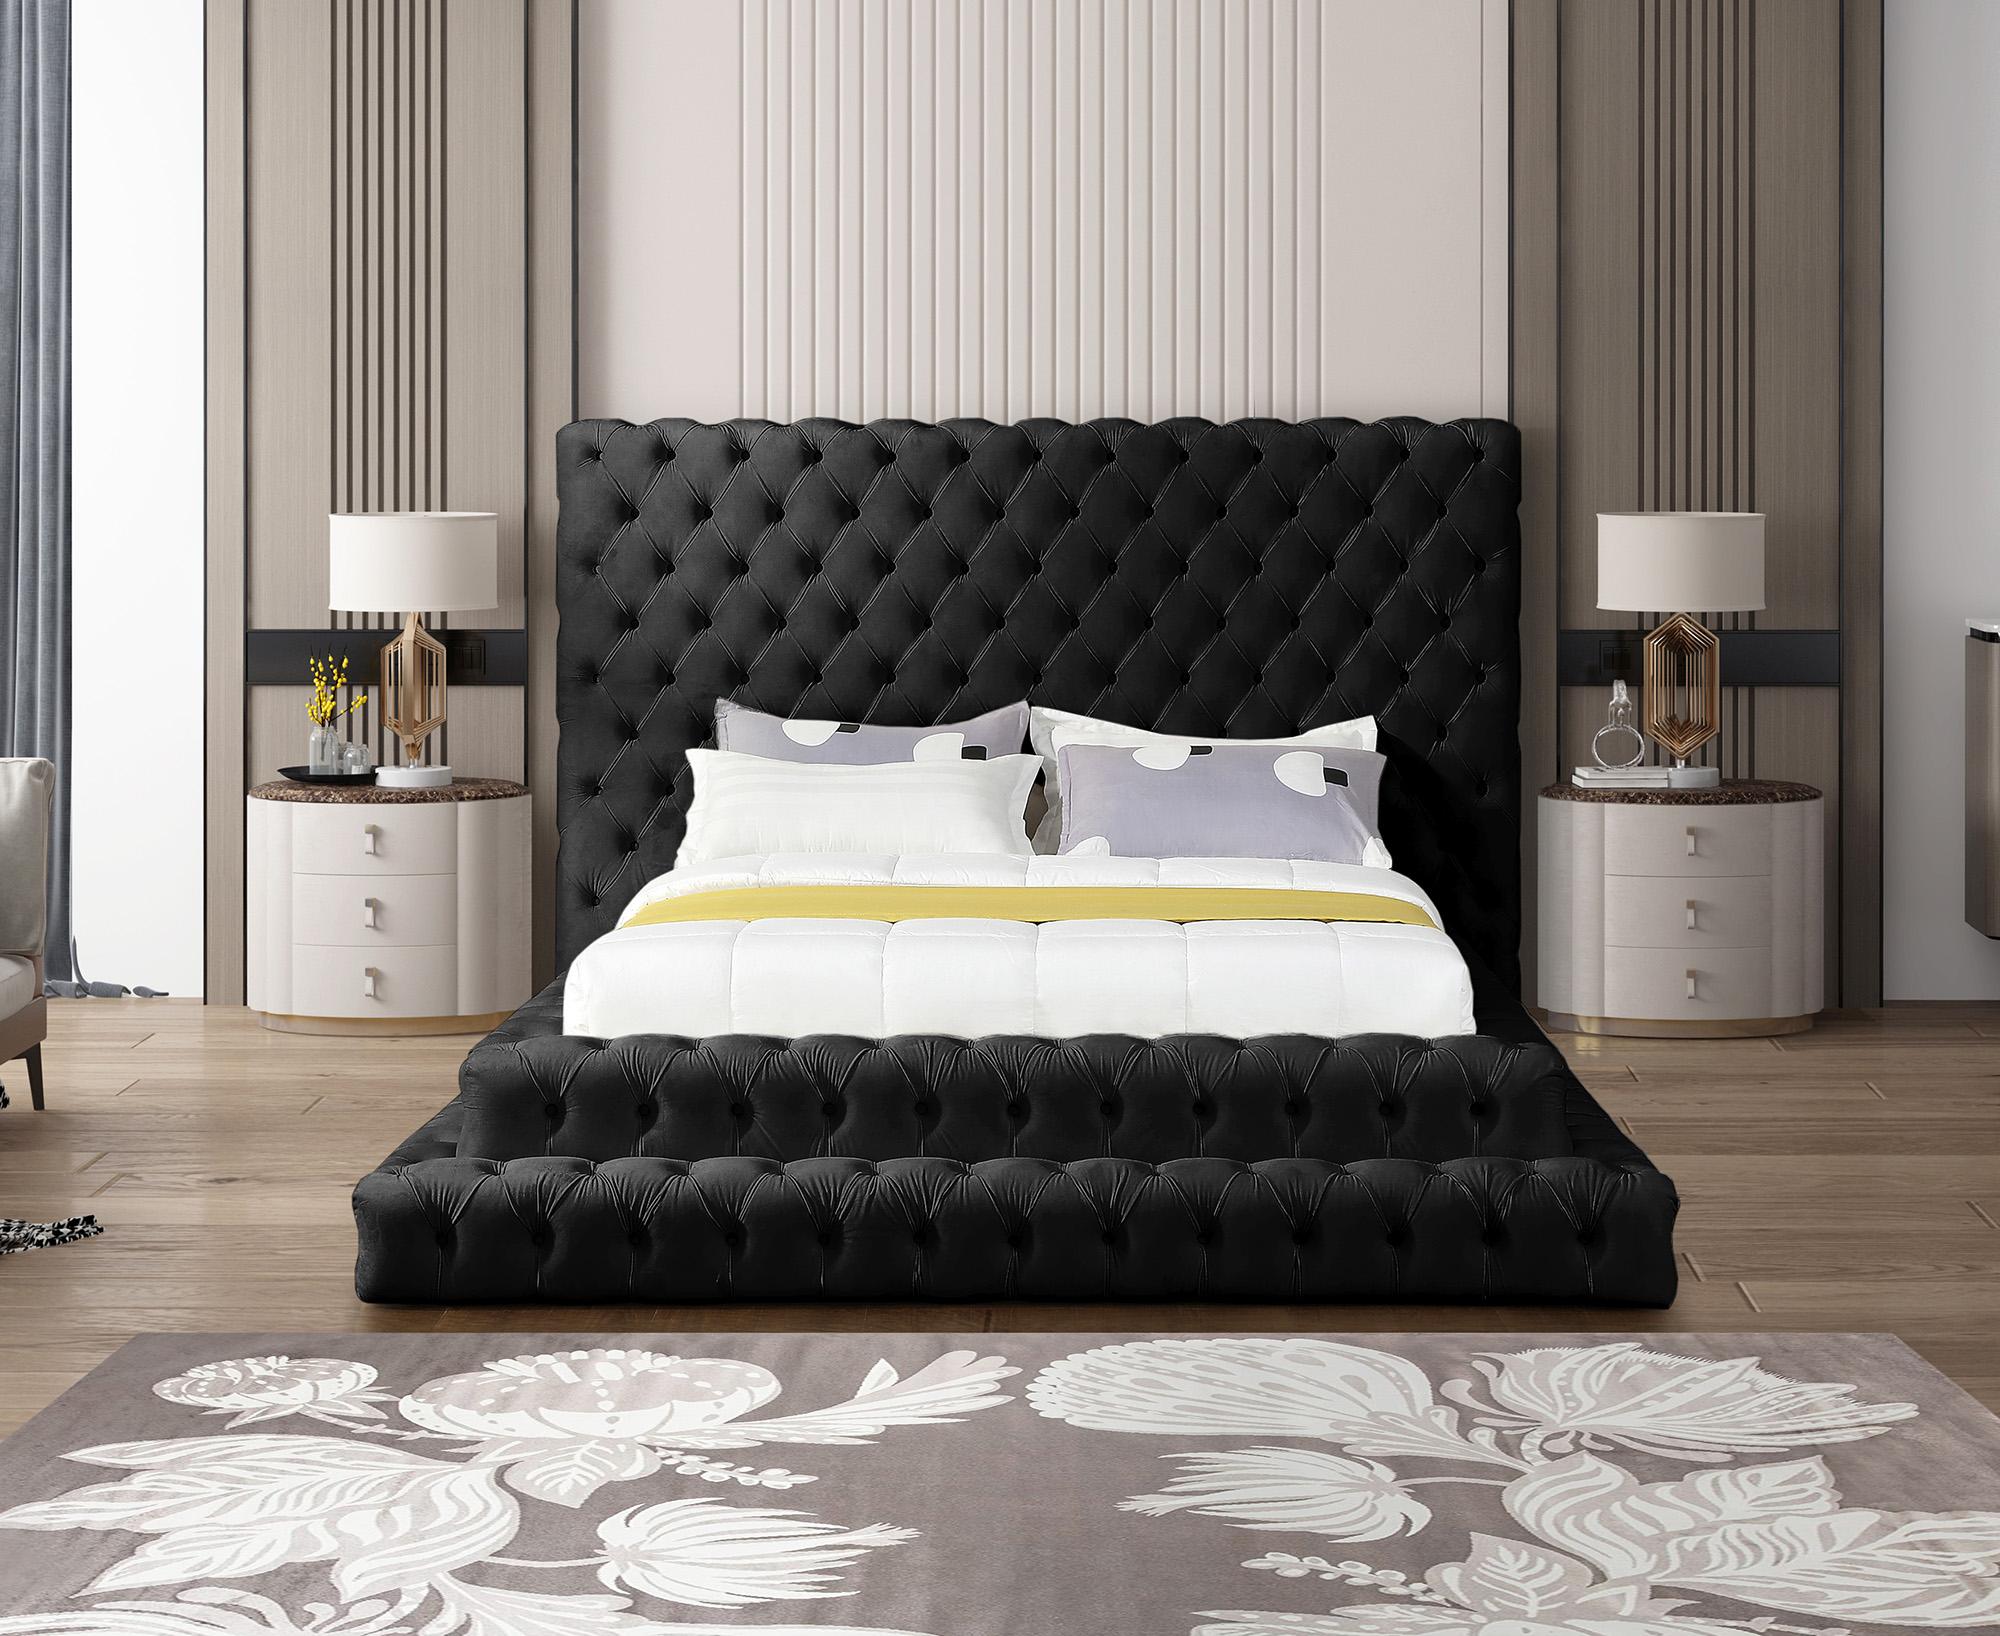 

    
RevelBlack-Q Meridian Furniture Platform Bed
